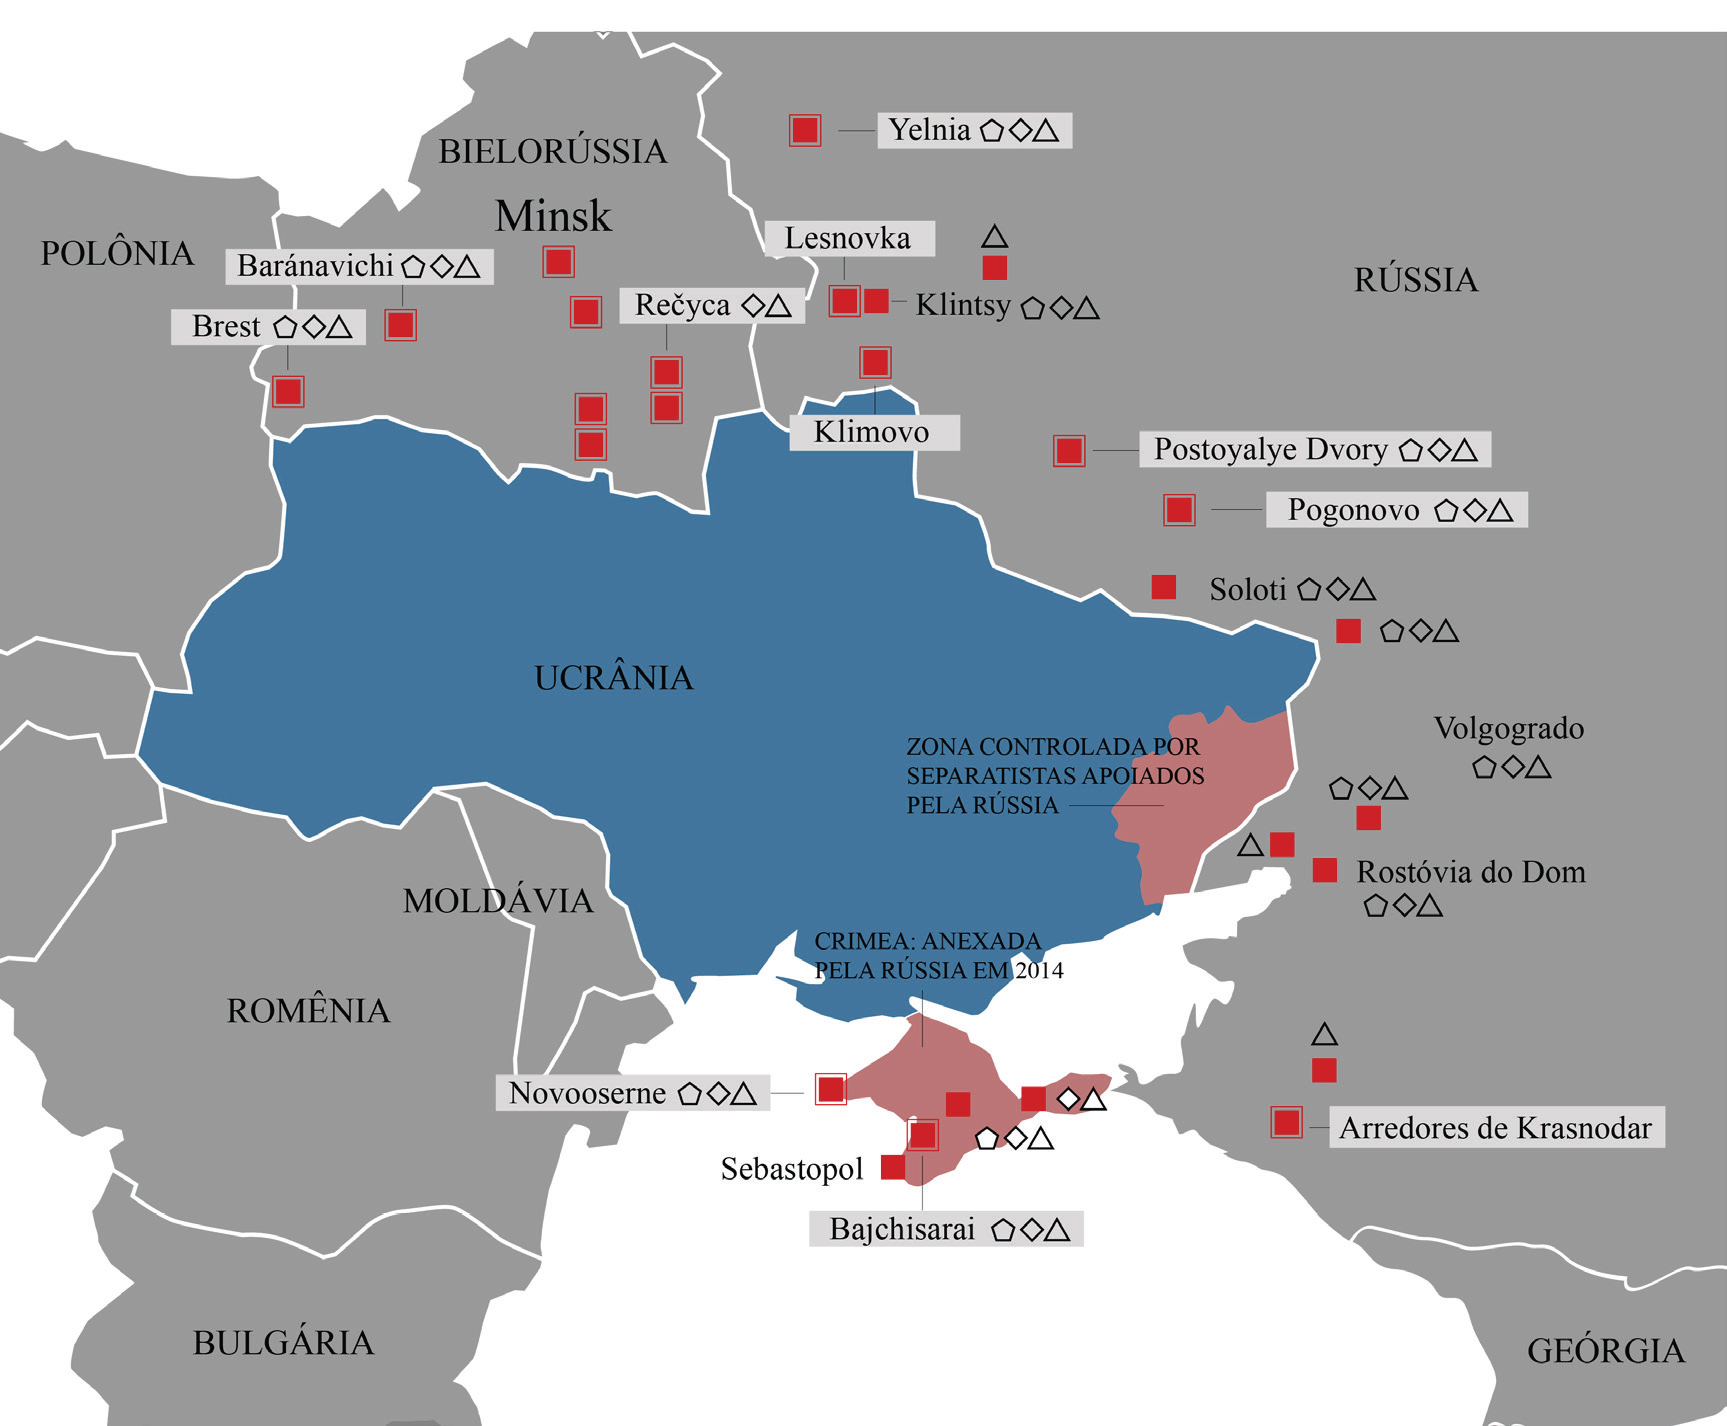 Figura 5 – Presença militar russa na fronteira com a Ucrânia antes do conflito. Fonte: Desenho gráfico adaptado do mapa publicado pela CNN Español (2022), baseado nas informações obtidas em 28 de janeiro de 2022.